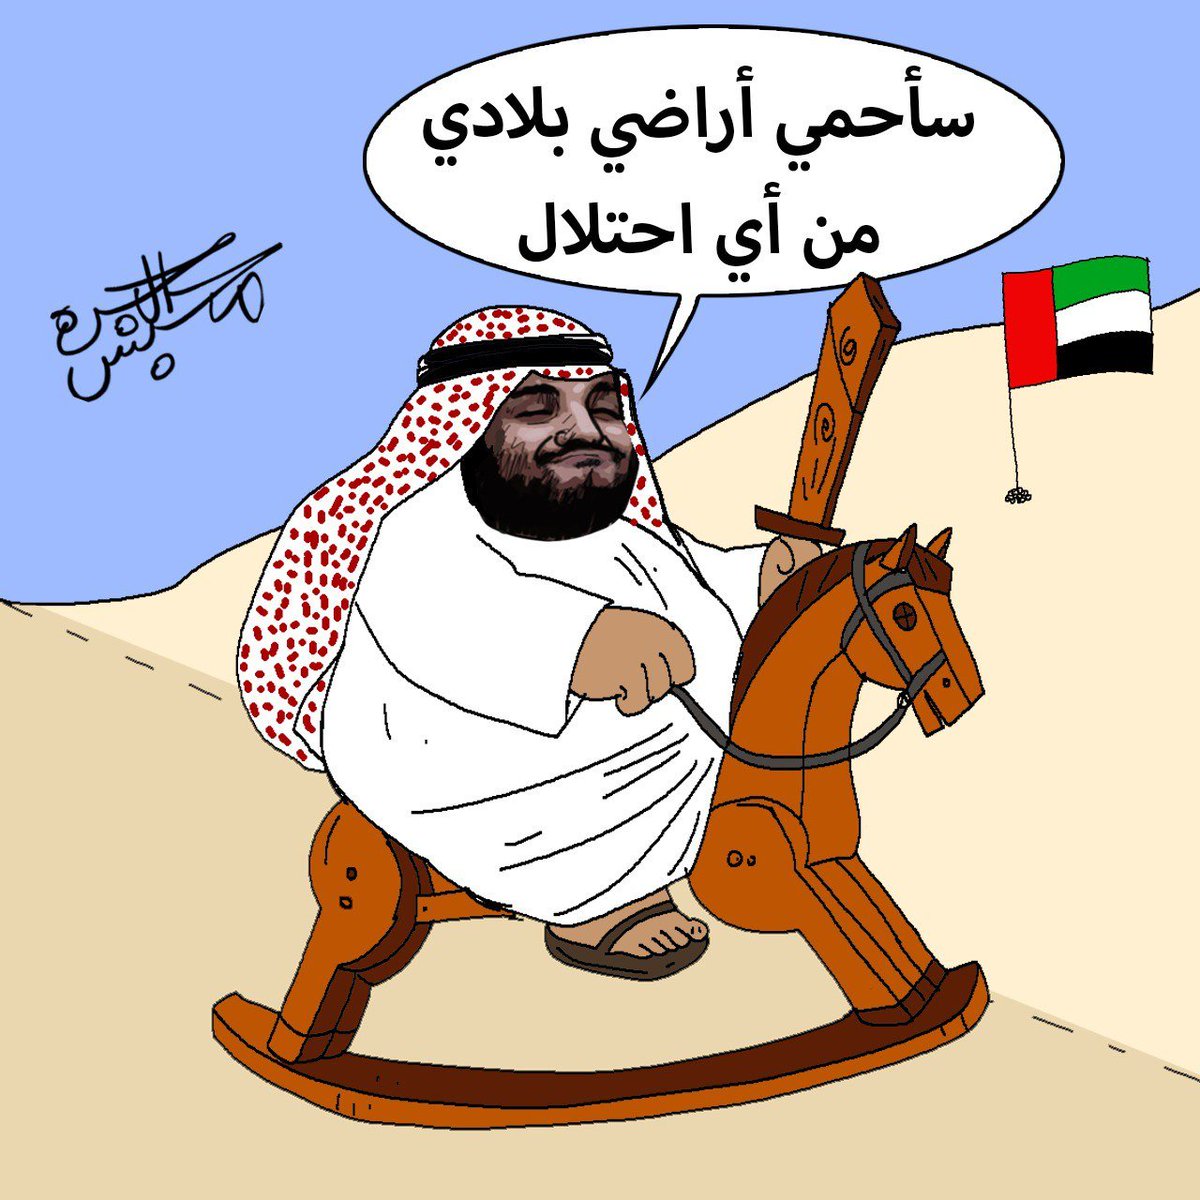 بجرأة نادرة.. محمد بن سلمان قرر مواجهة الإمارات ورفض احتلالها لأراضي من بلاده